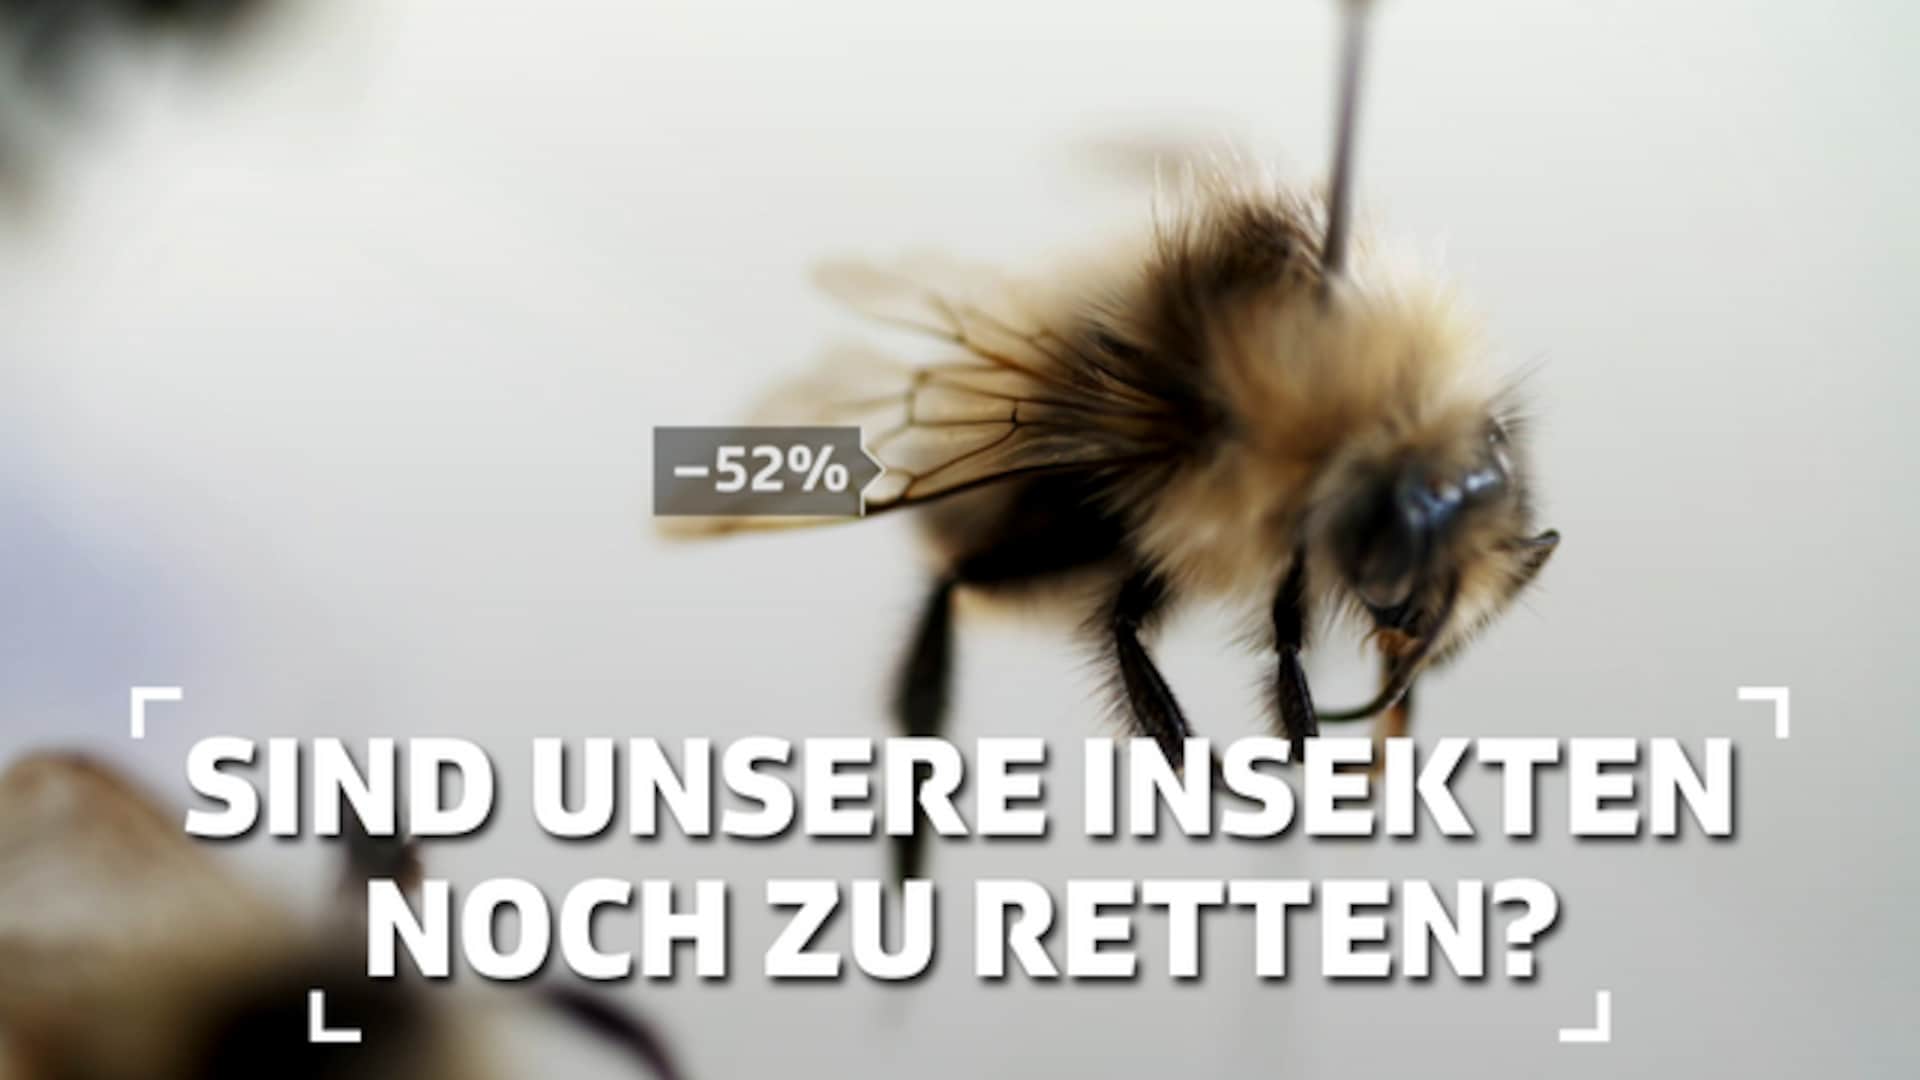 Sind unsere Insekten noch zu retten?